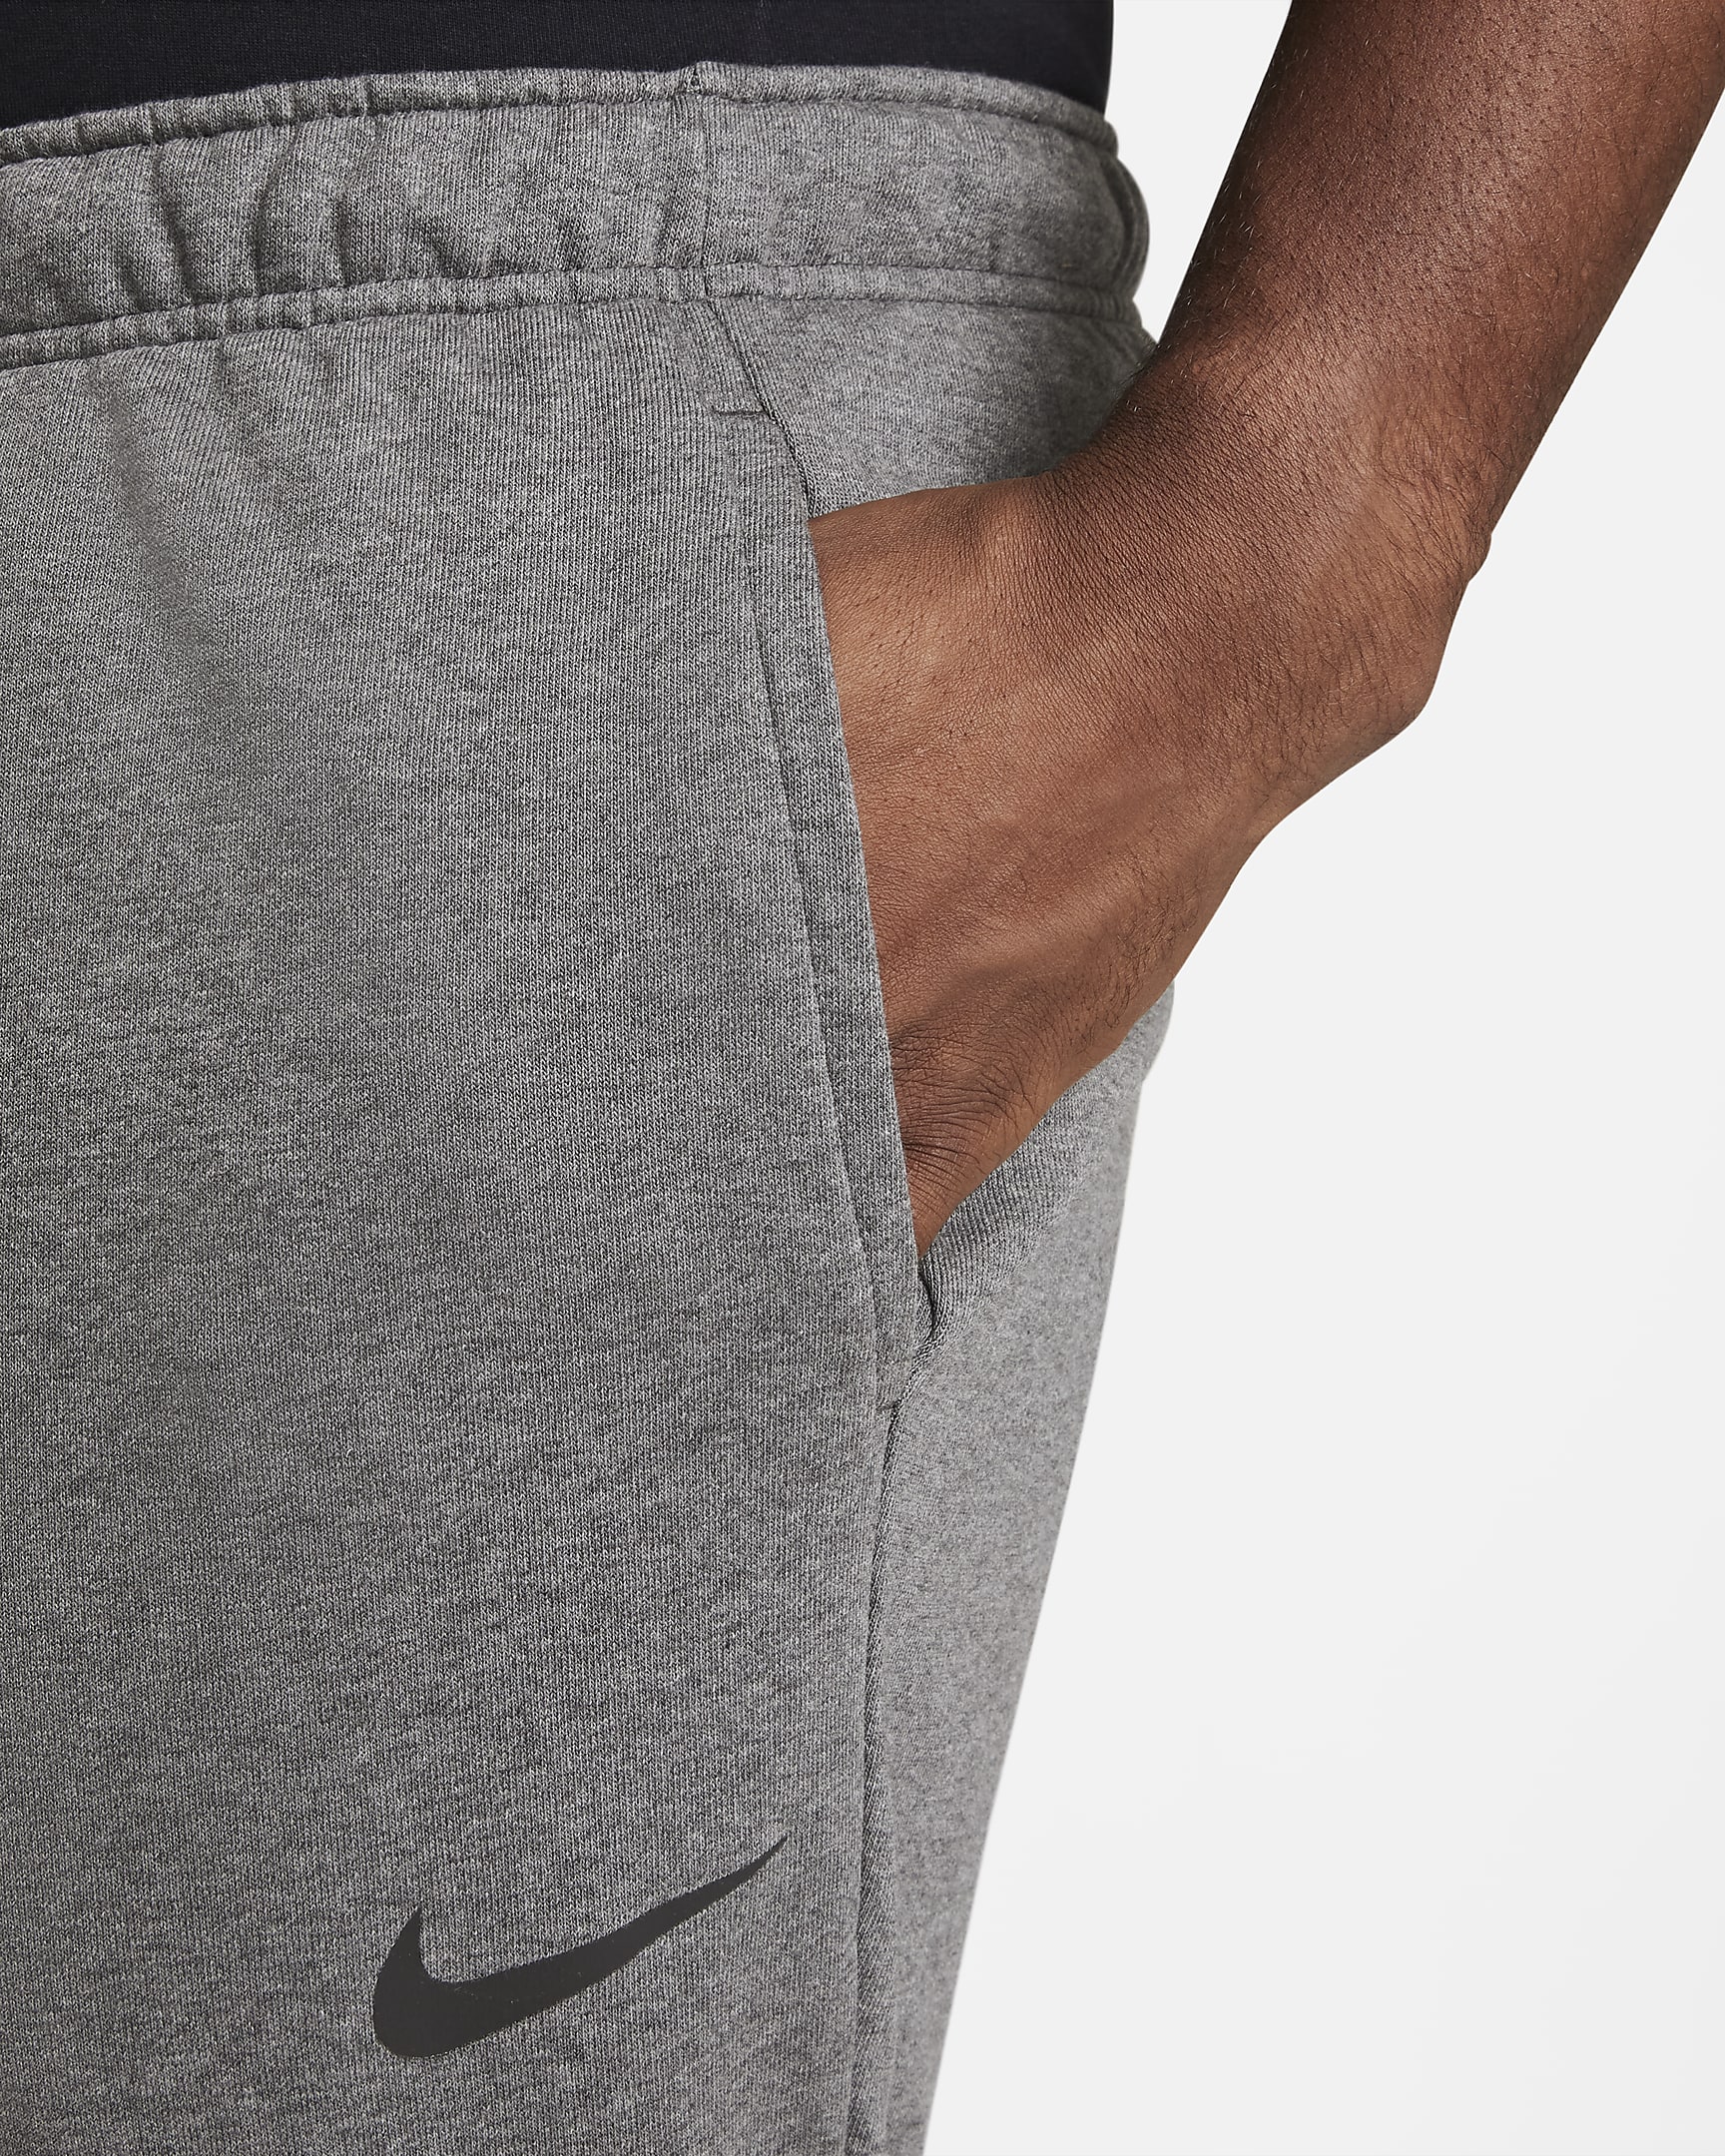 Nike Dry Men's Dri-FIT Taper Fitness Fleece Trousers. Nike CH